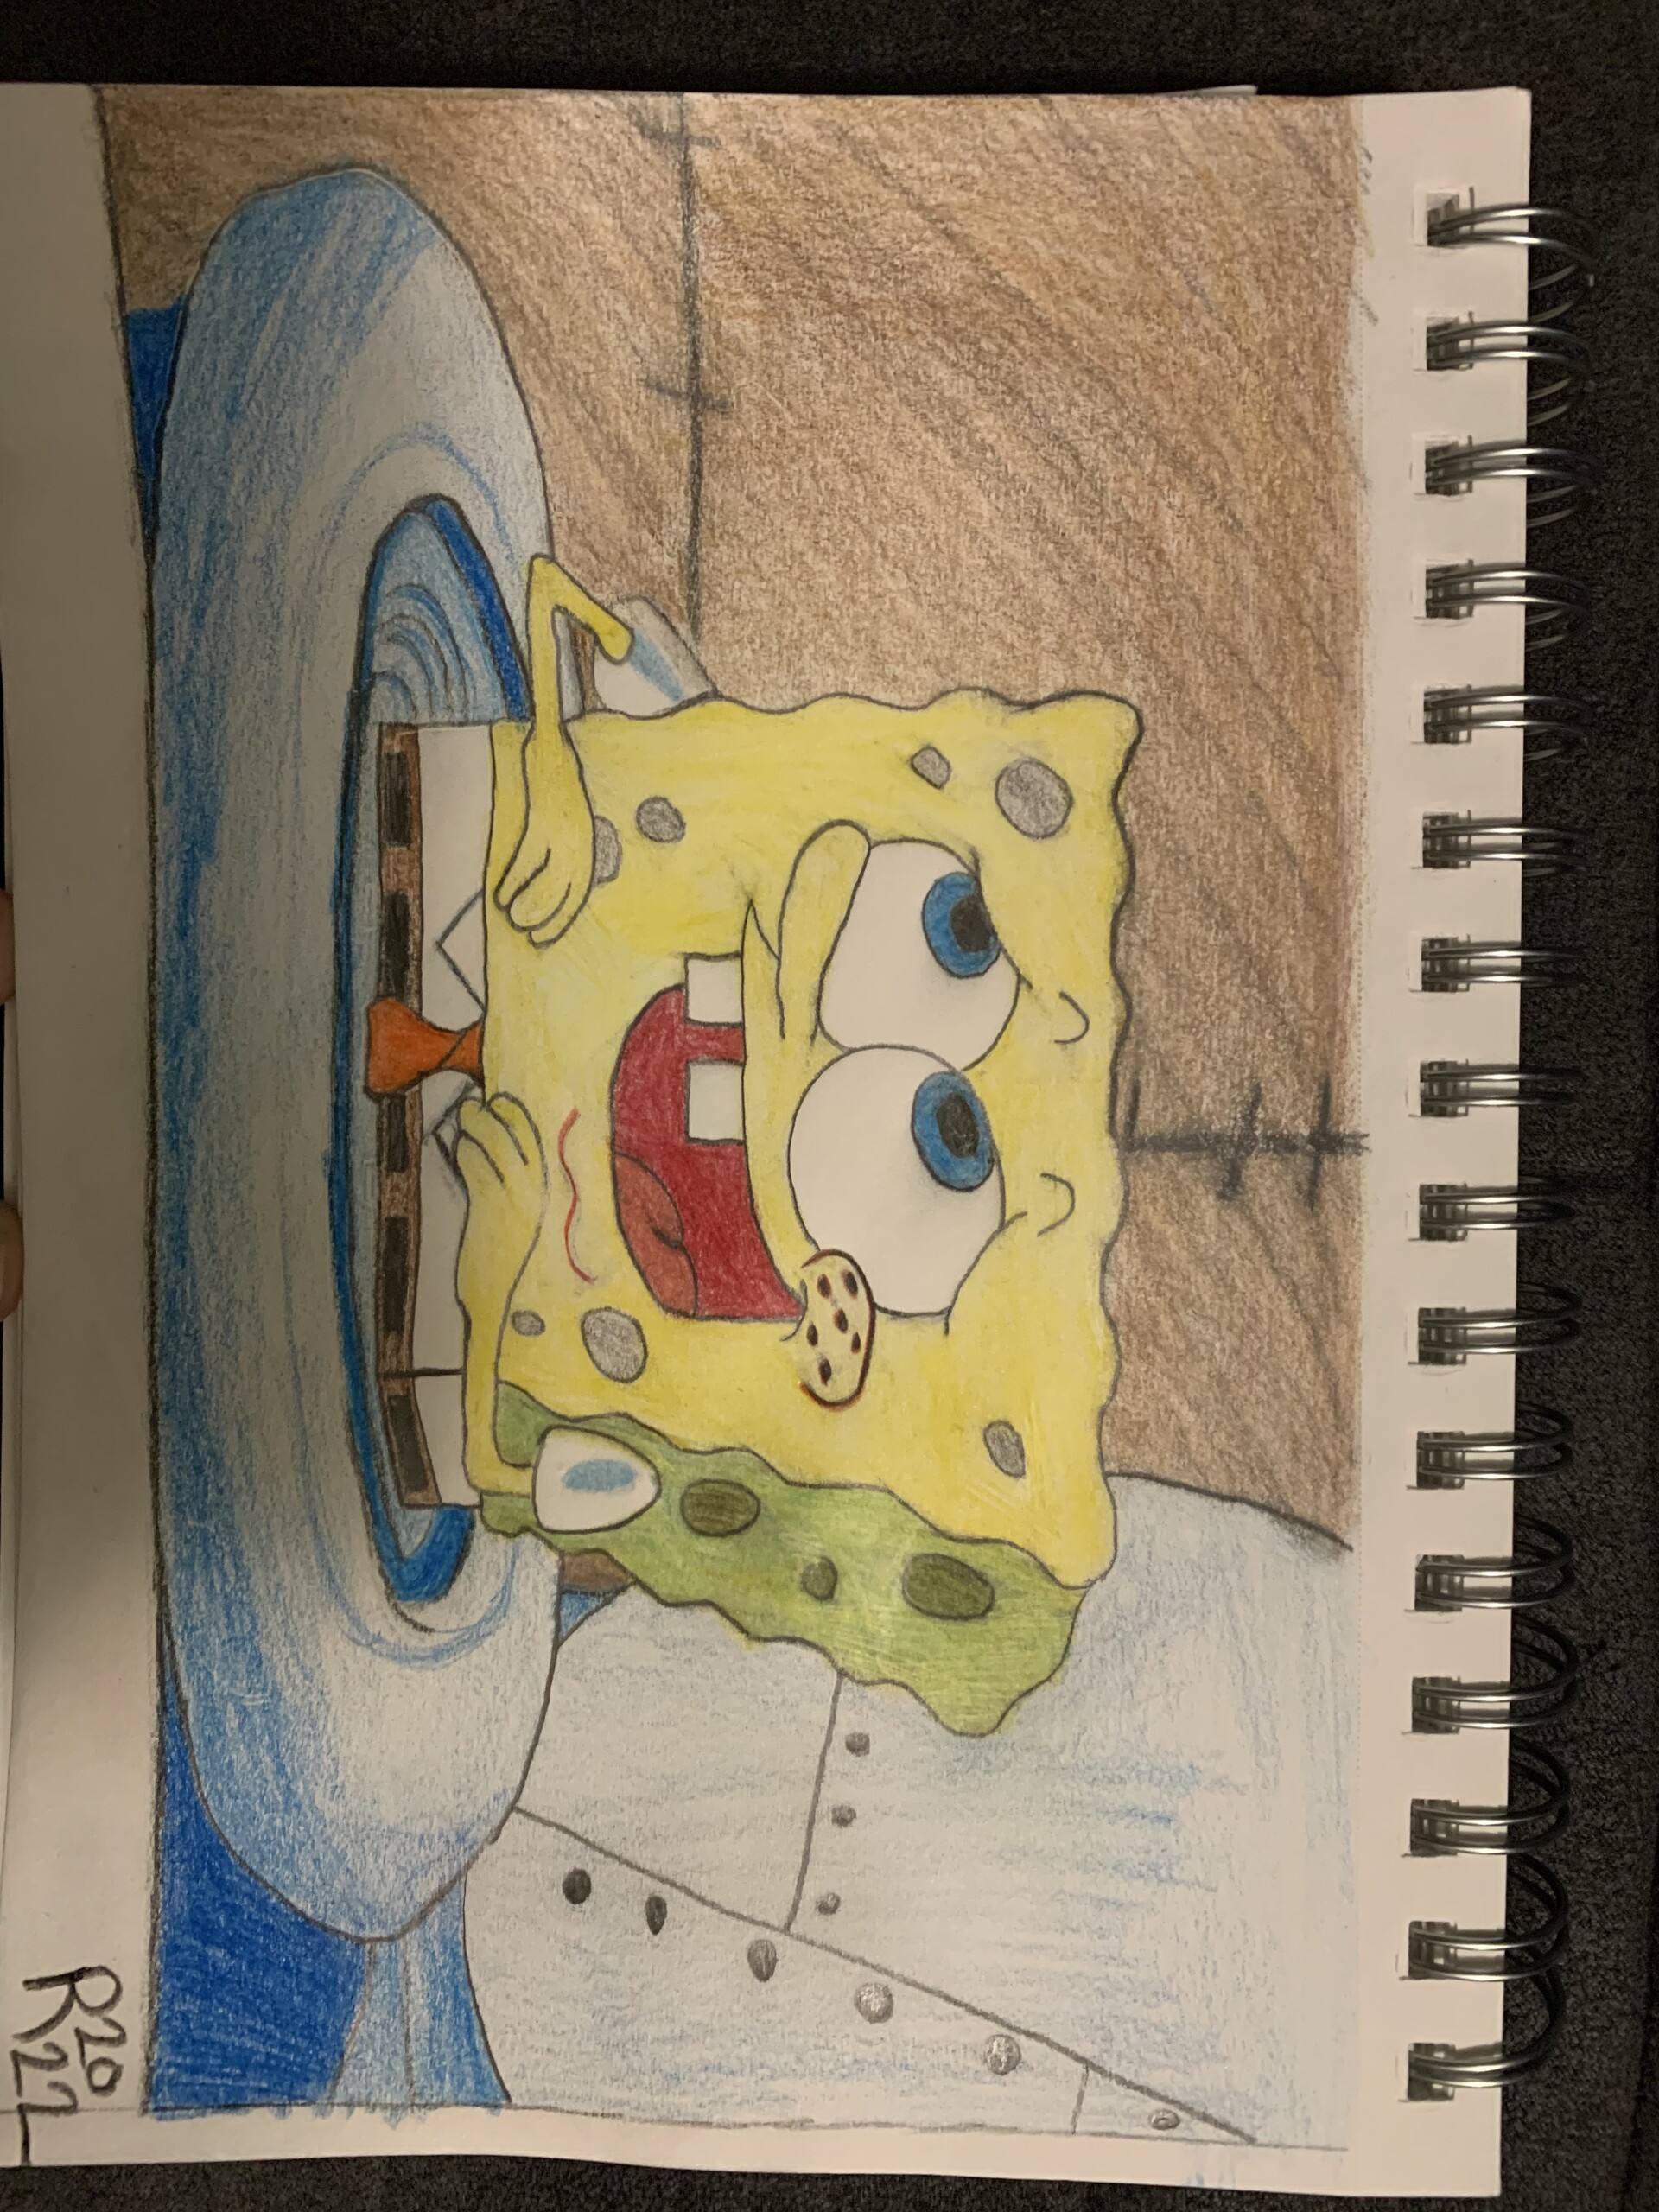 spongebob drawing in pencil episode